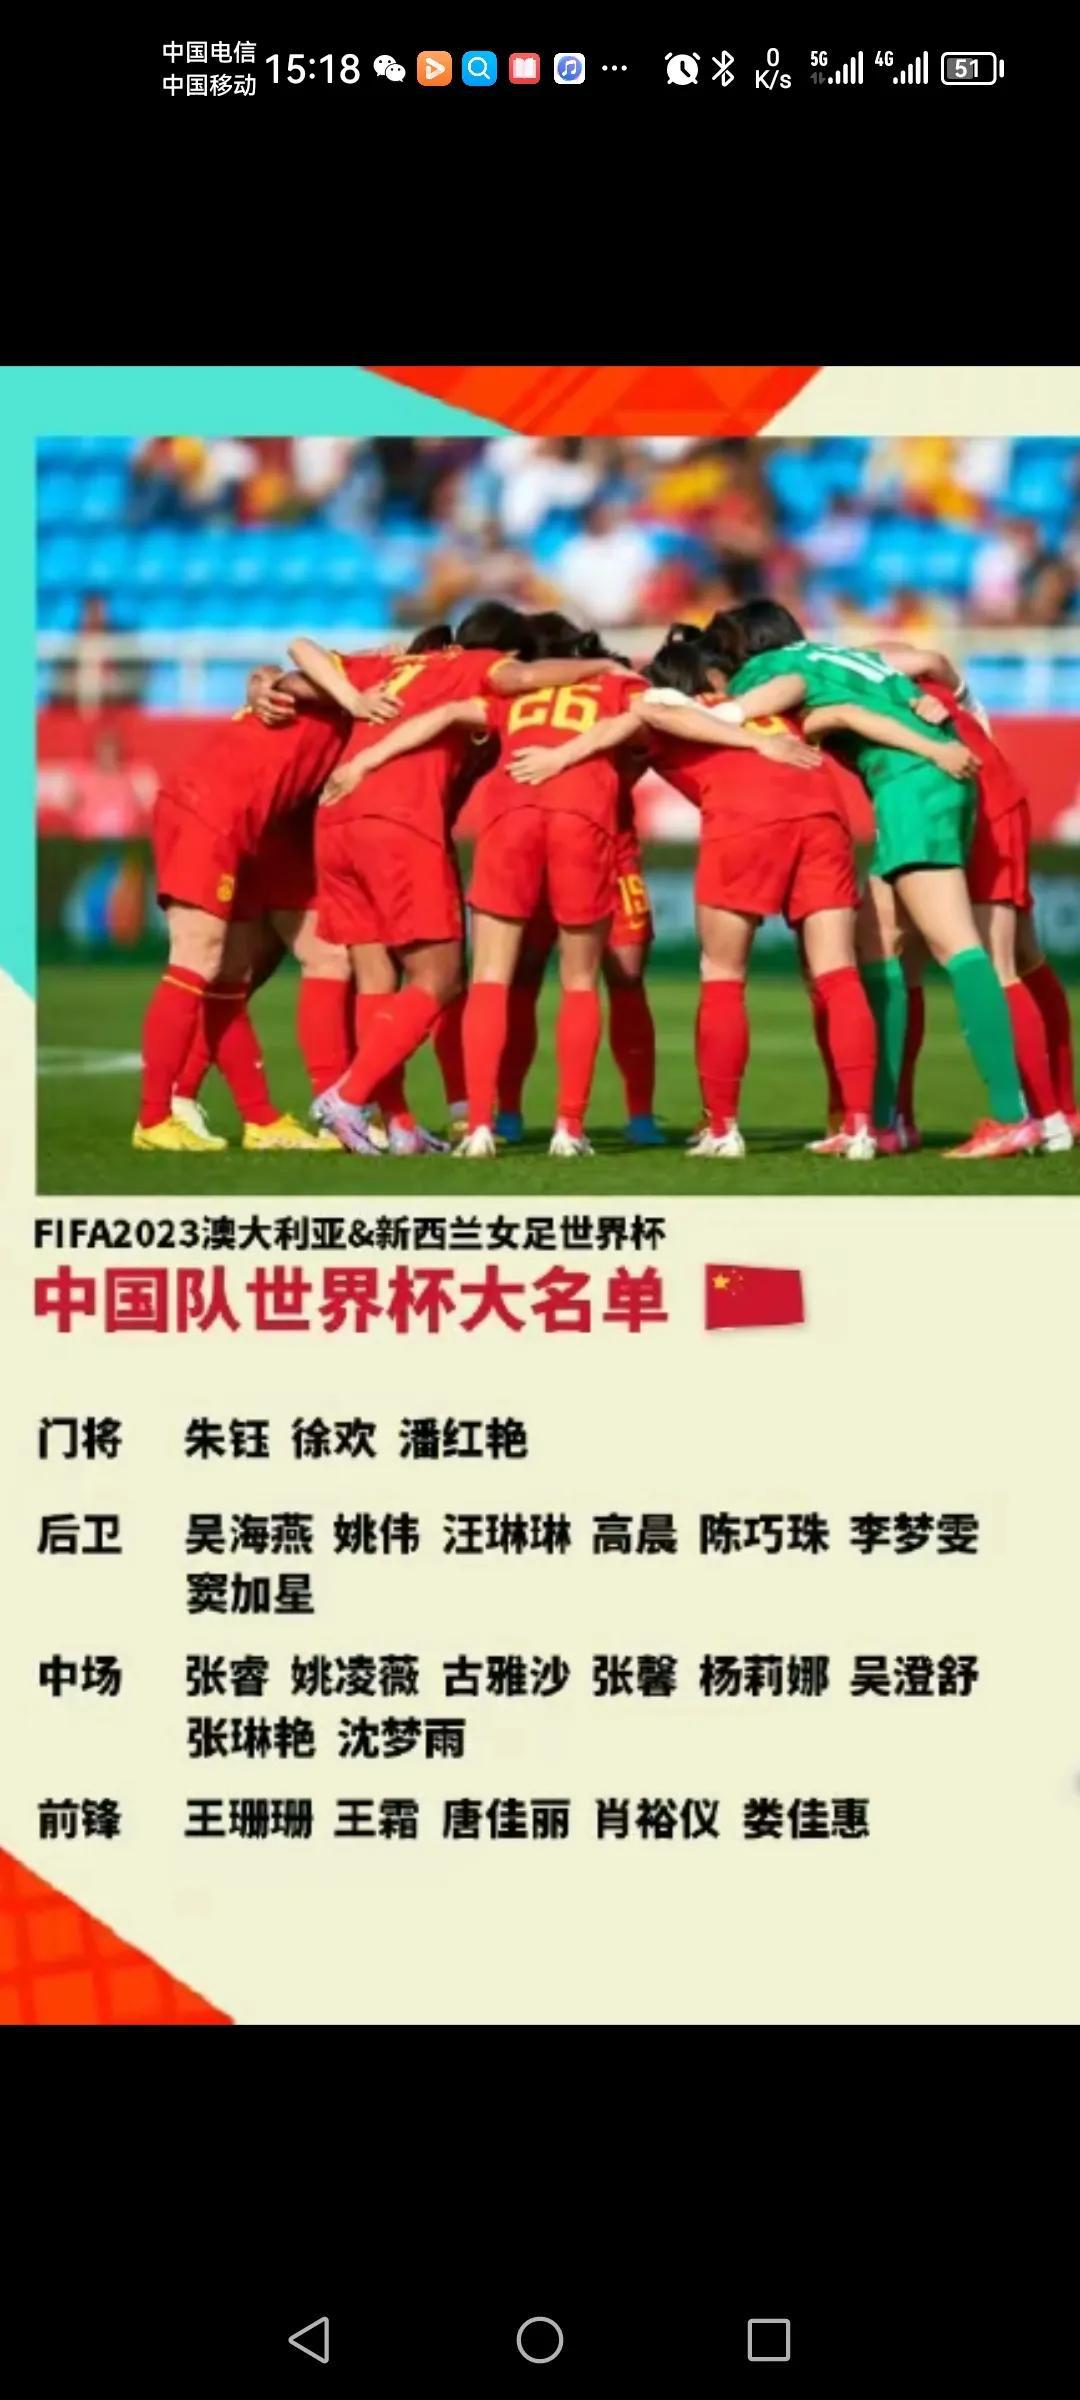 中国女足世界杯出征了！
王霜、唐佳丽、张琳艳以及九球天后王珊珊均在列！
不过世界(3)